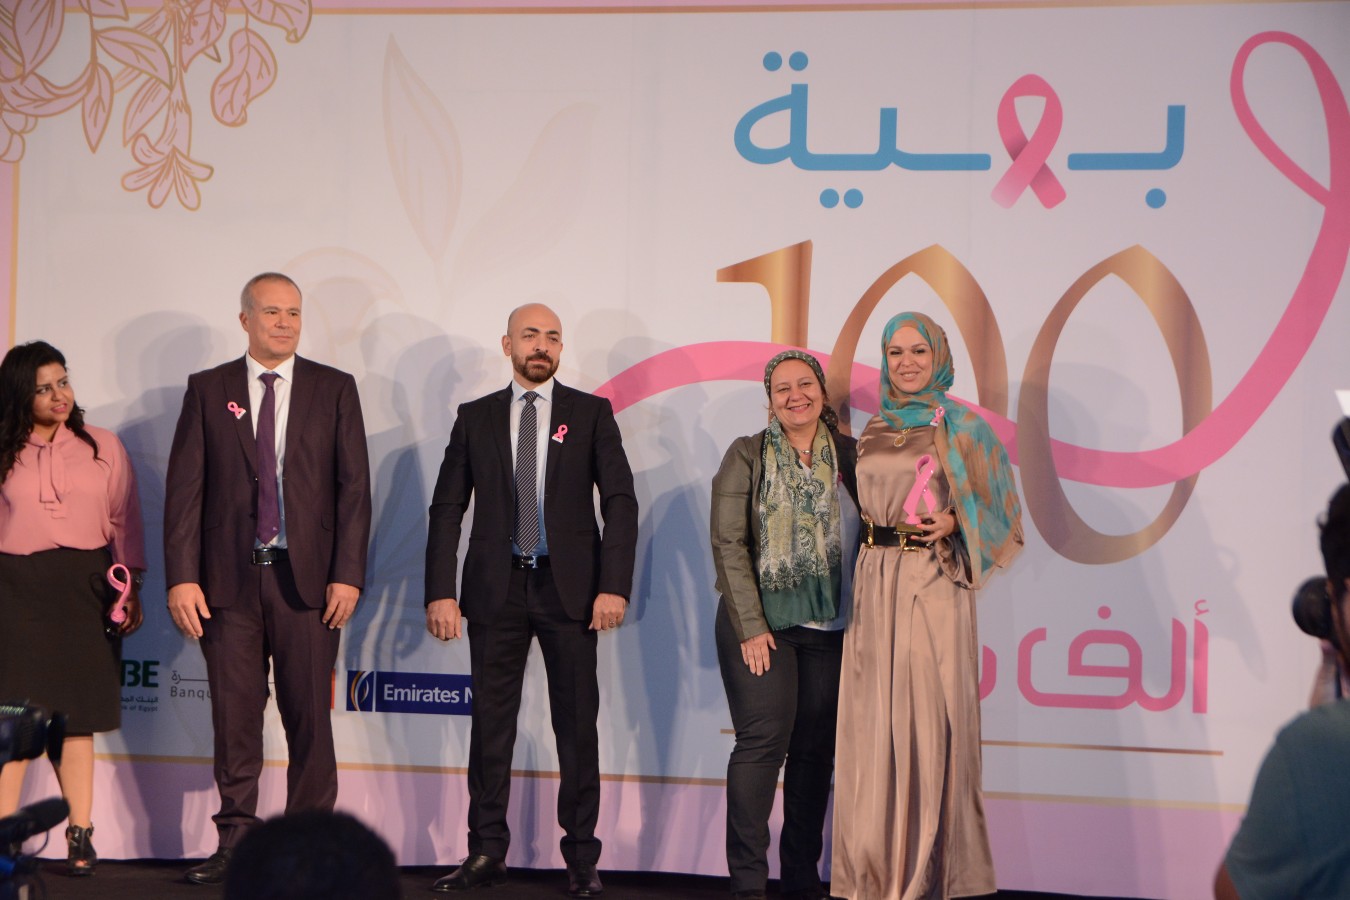 مؤسسة بهيه هي مؤسسة خيرية تهدف لعلاج سرطان الثدي بالمجان، تم افتتاحها منذ أربع سنوات وسط أحلام بسيطة من ضمنها استقبال ١٠ آلاف سيدة ولكن بهبة اليوم تستقبل ١٠٠ ألف سيدة